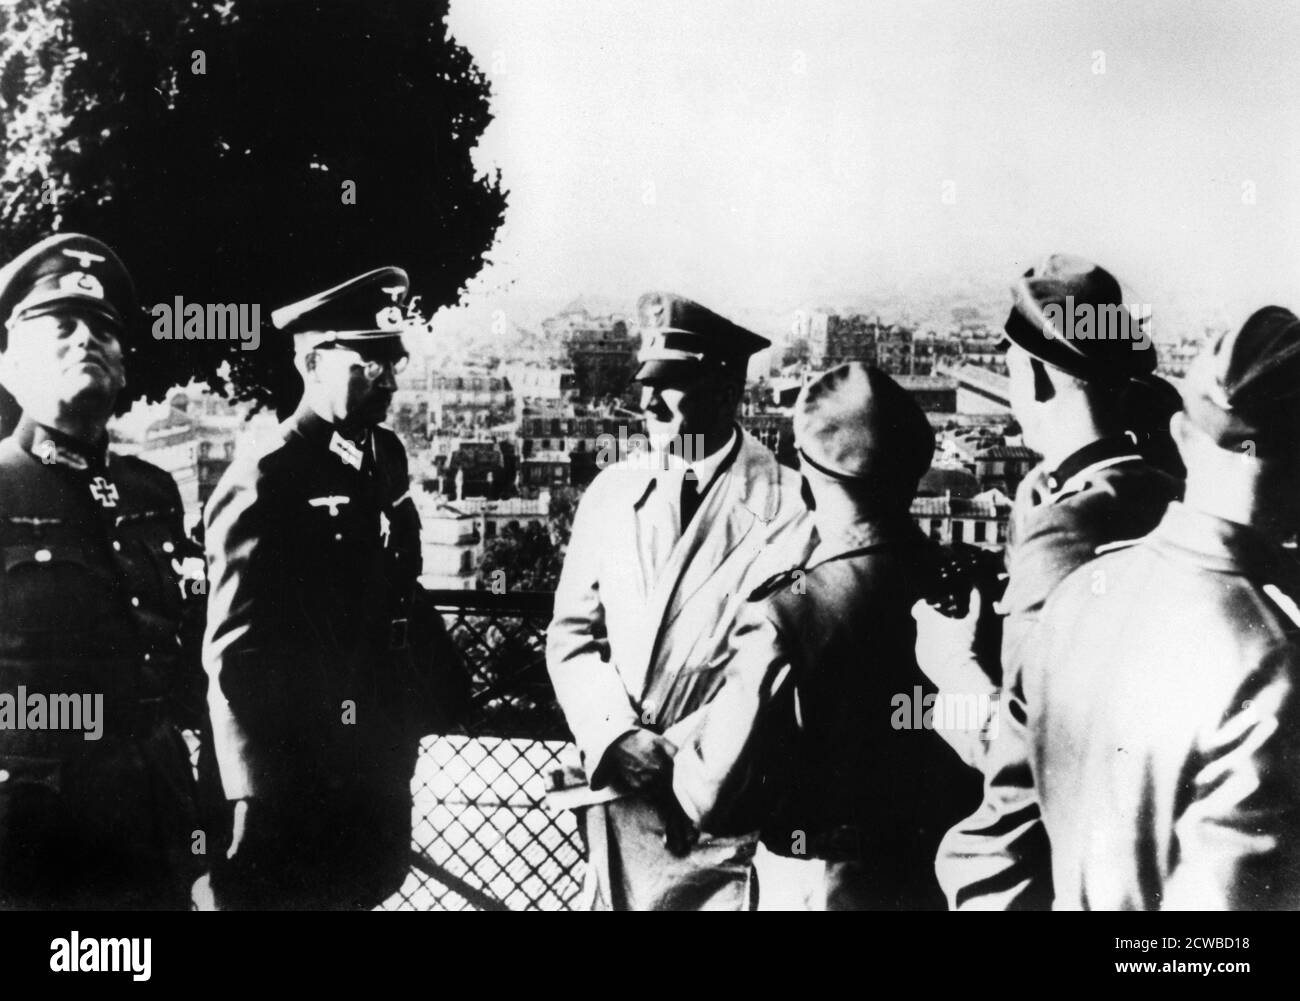 Adolf Hitler besucht die besetzte Stadt Paris, 1940. Die beiden Offiziere links vom Nazi-Führer sind Oberst-General (später Feldmarschall) Wilhelm Keitel und Oberst Hans Speidel. Speidel würde später an der Verschwörung zur Ermordung Hitlers im Juli 1944 beteiligt sein. Er überlebte die Repressalien nach dem Komplott und wurde nach dem Krieg ein hochrangiger General in der NATO. Der Fotograf ist unbekannt. Stockfoto